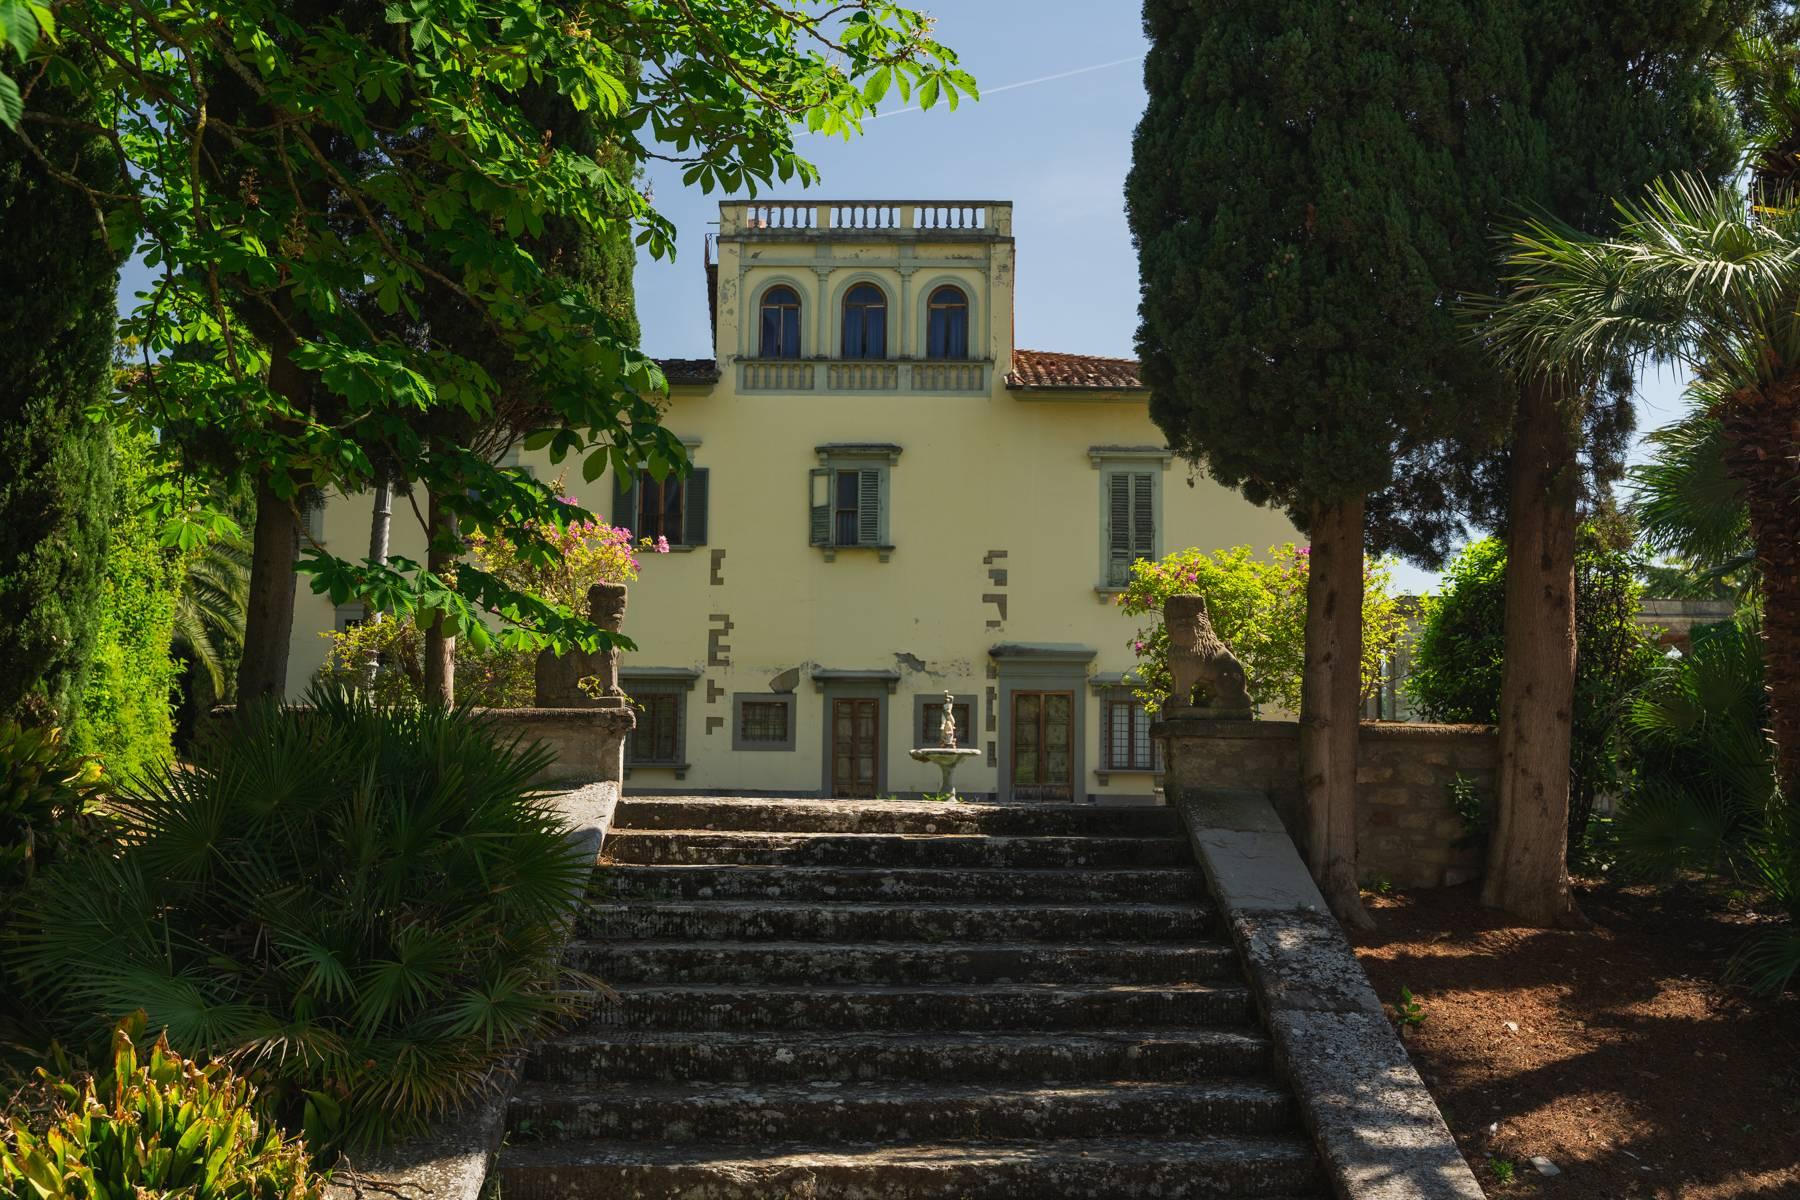 Elegante Villa aus dem 14. Jahrhundert mit einem Hektar Park in Florenz - 39